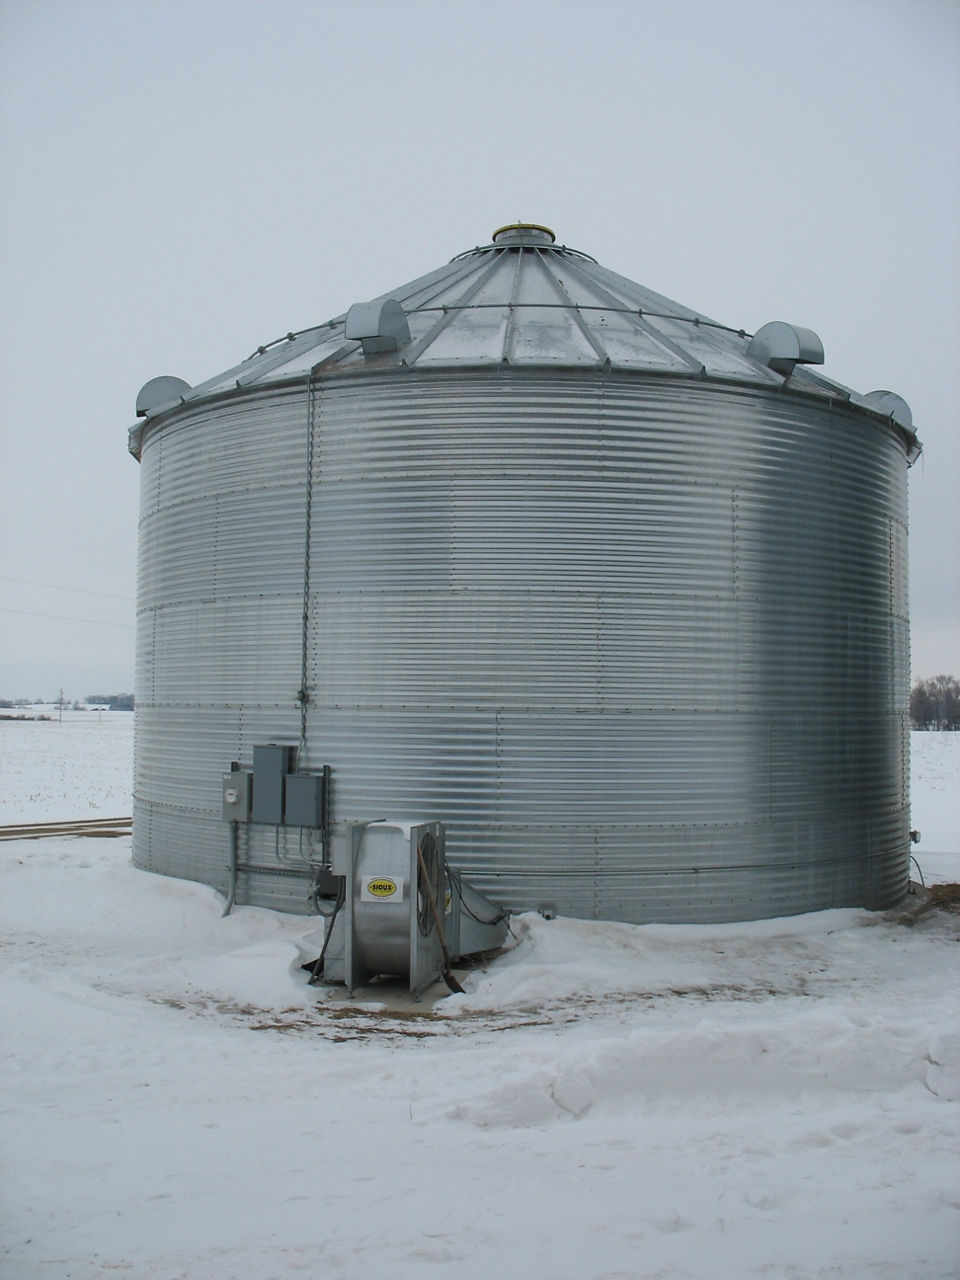 Equipment - Grain Bin in Winter